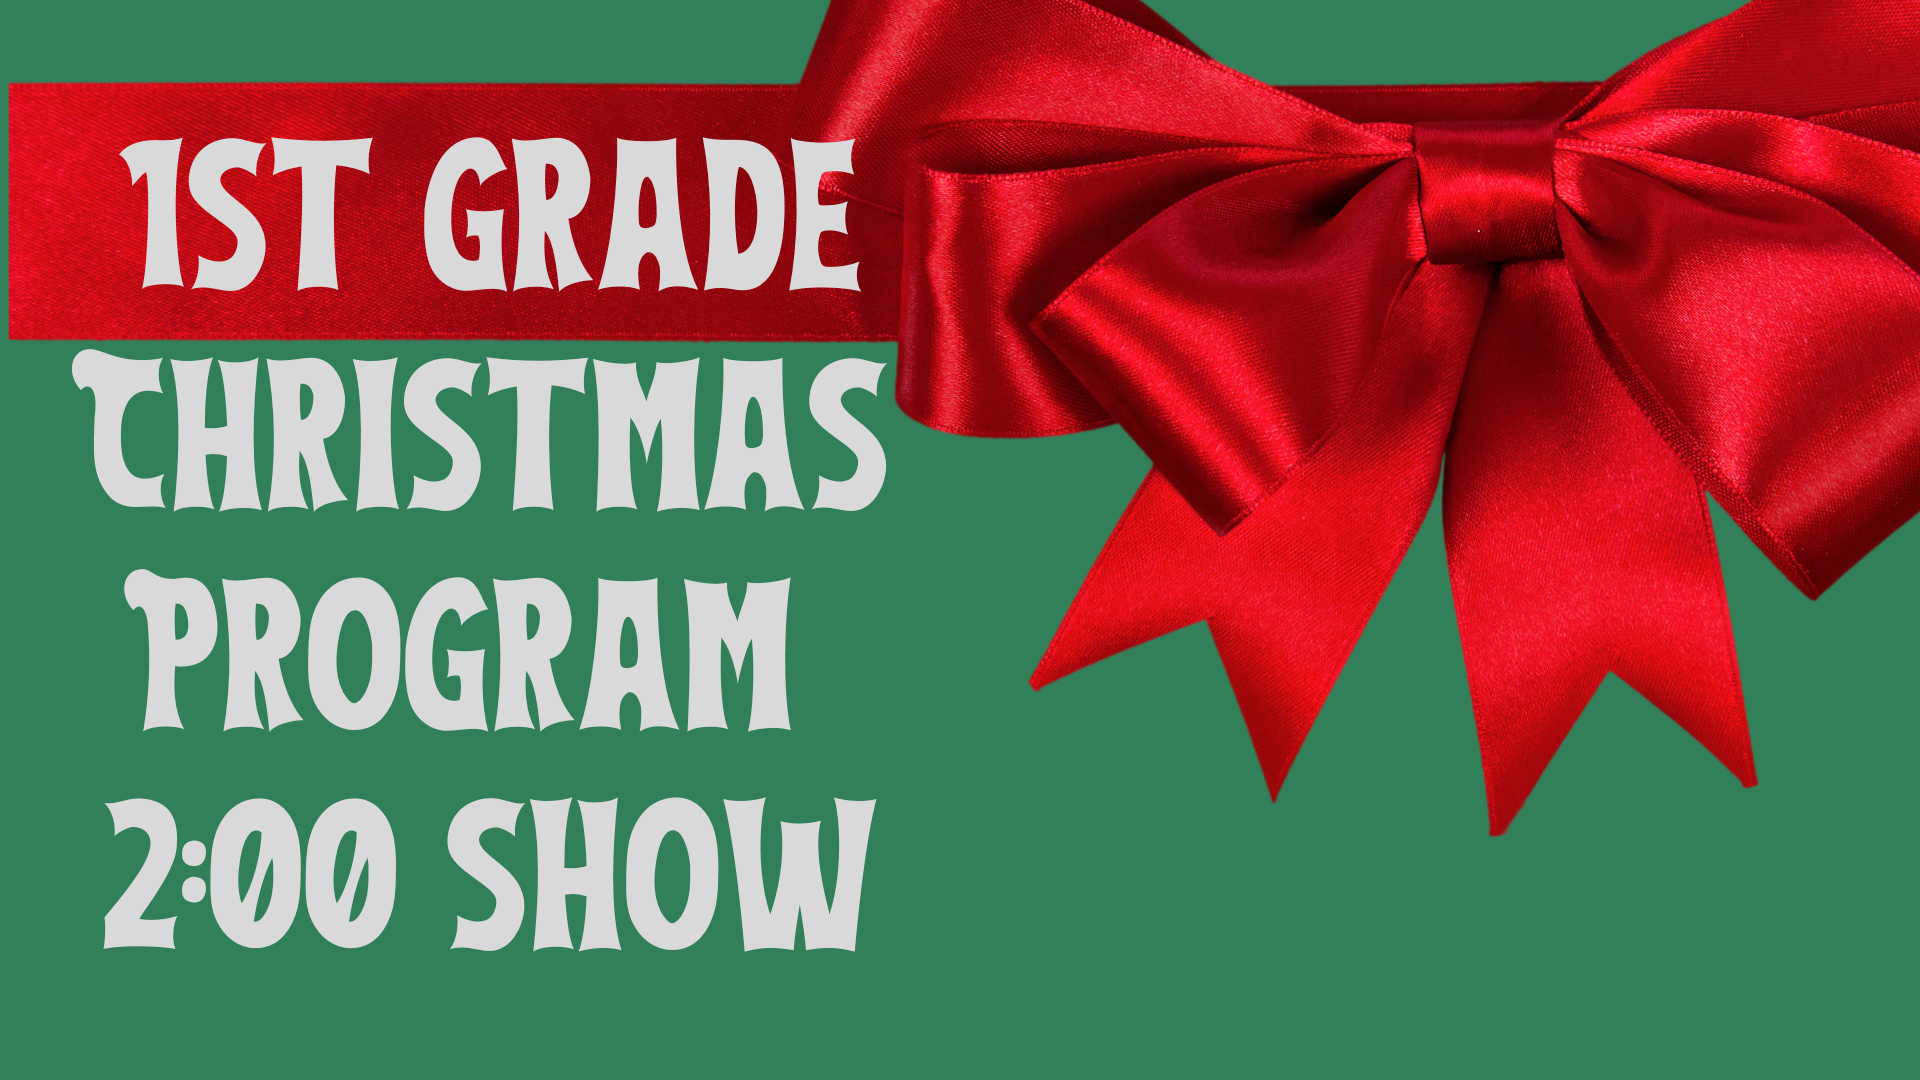 1st grade christmas program 2:00 show